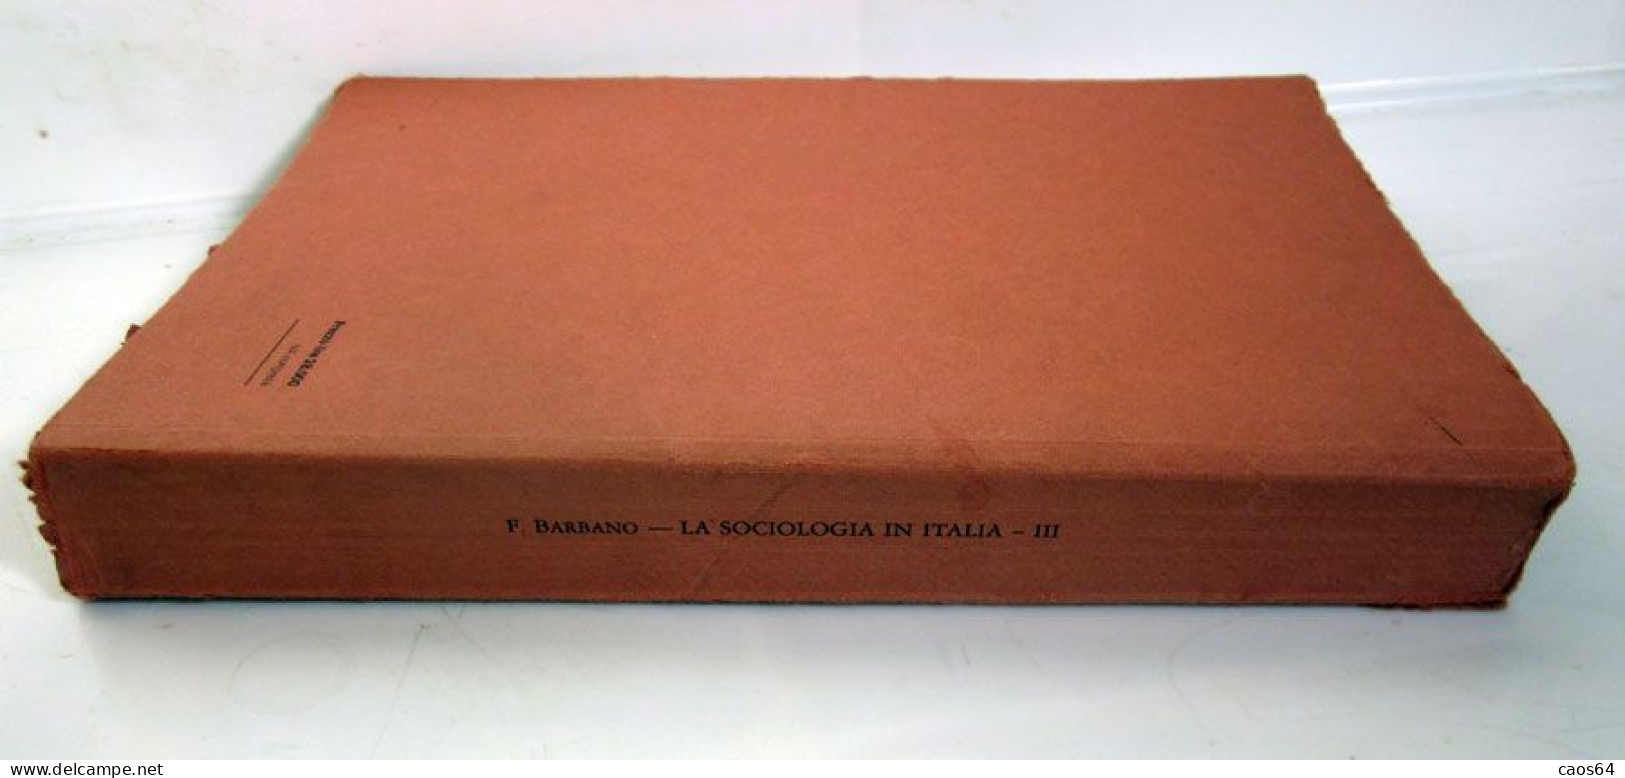 La Sociologia In Italia III Filippo Barbano Giappichelli 1987 - Law & Economics